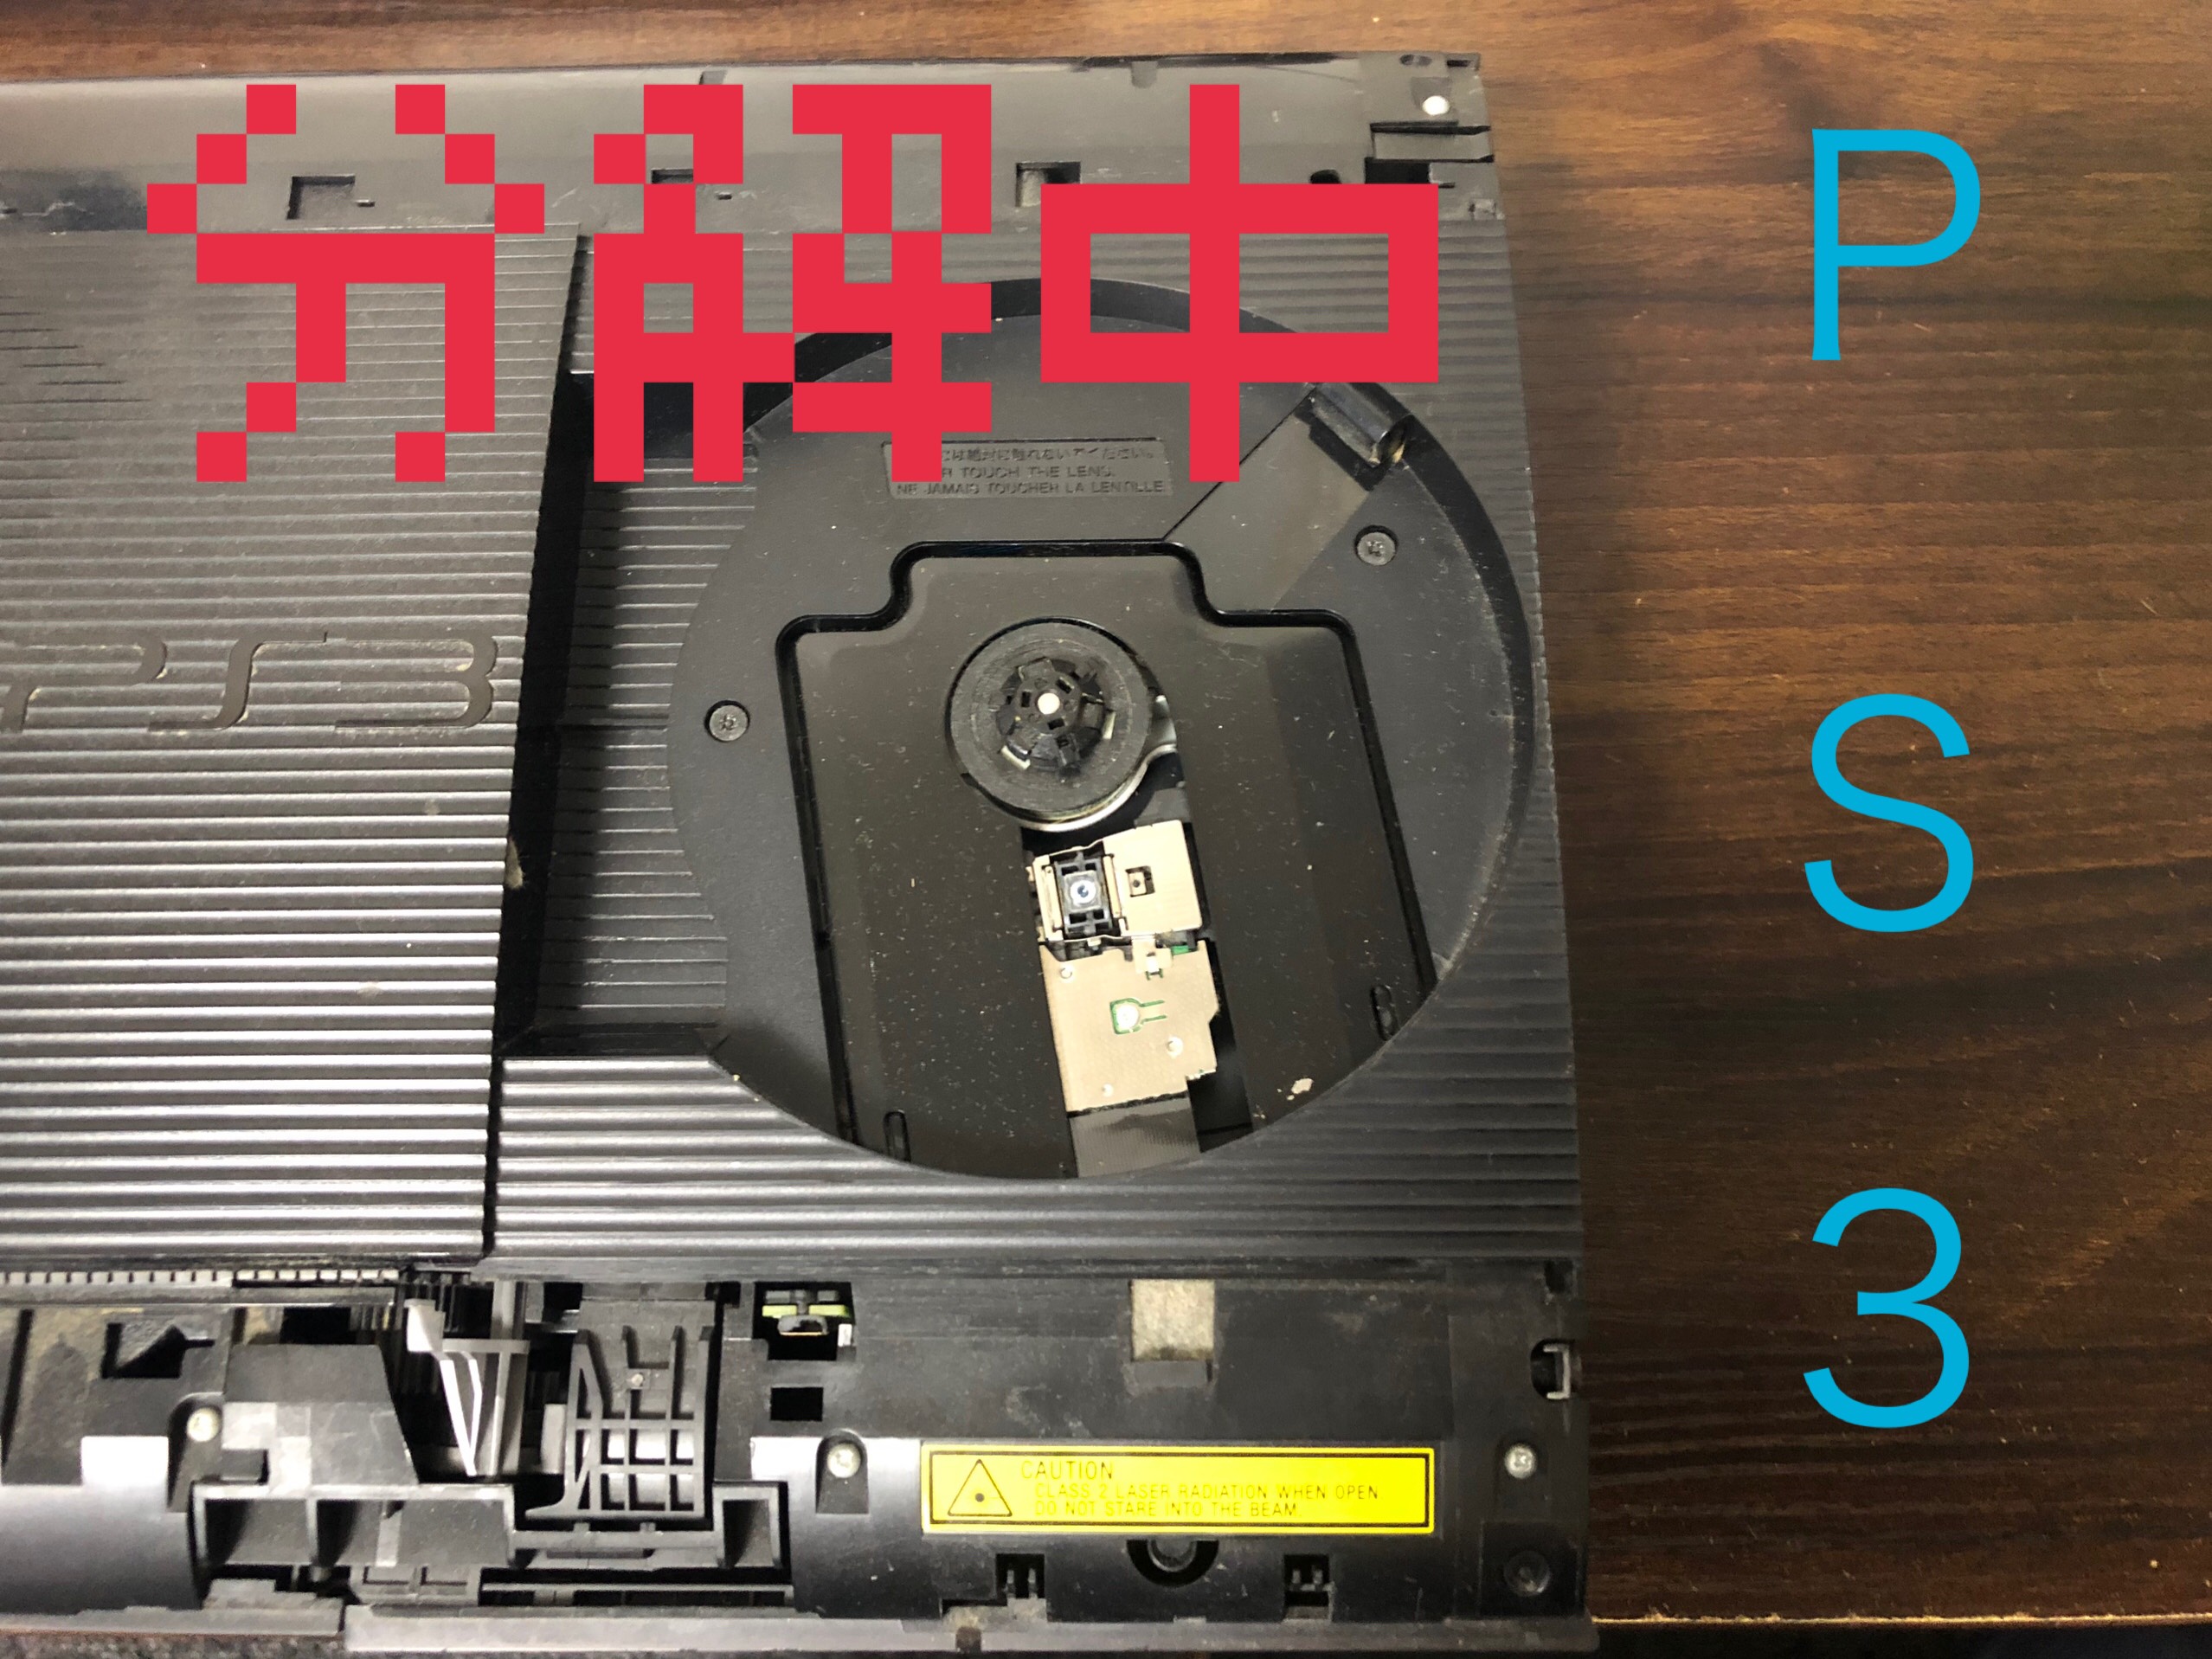 異音 起動のしない時のps３修理内容 Switch Nintendo3ds Psp 修理のゲームホスピタル Switch Nintendo3ds ニンテンドーds Psp 修理